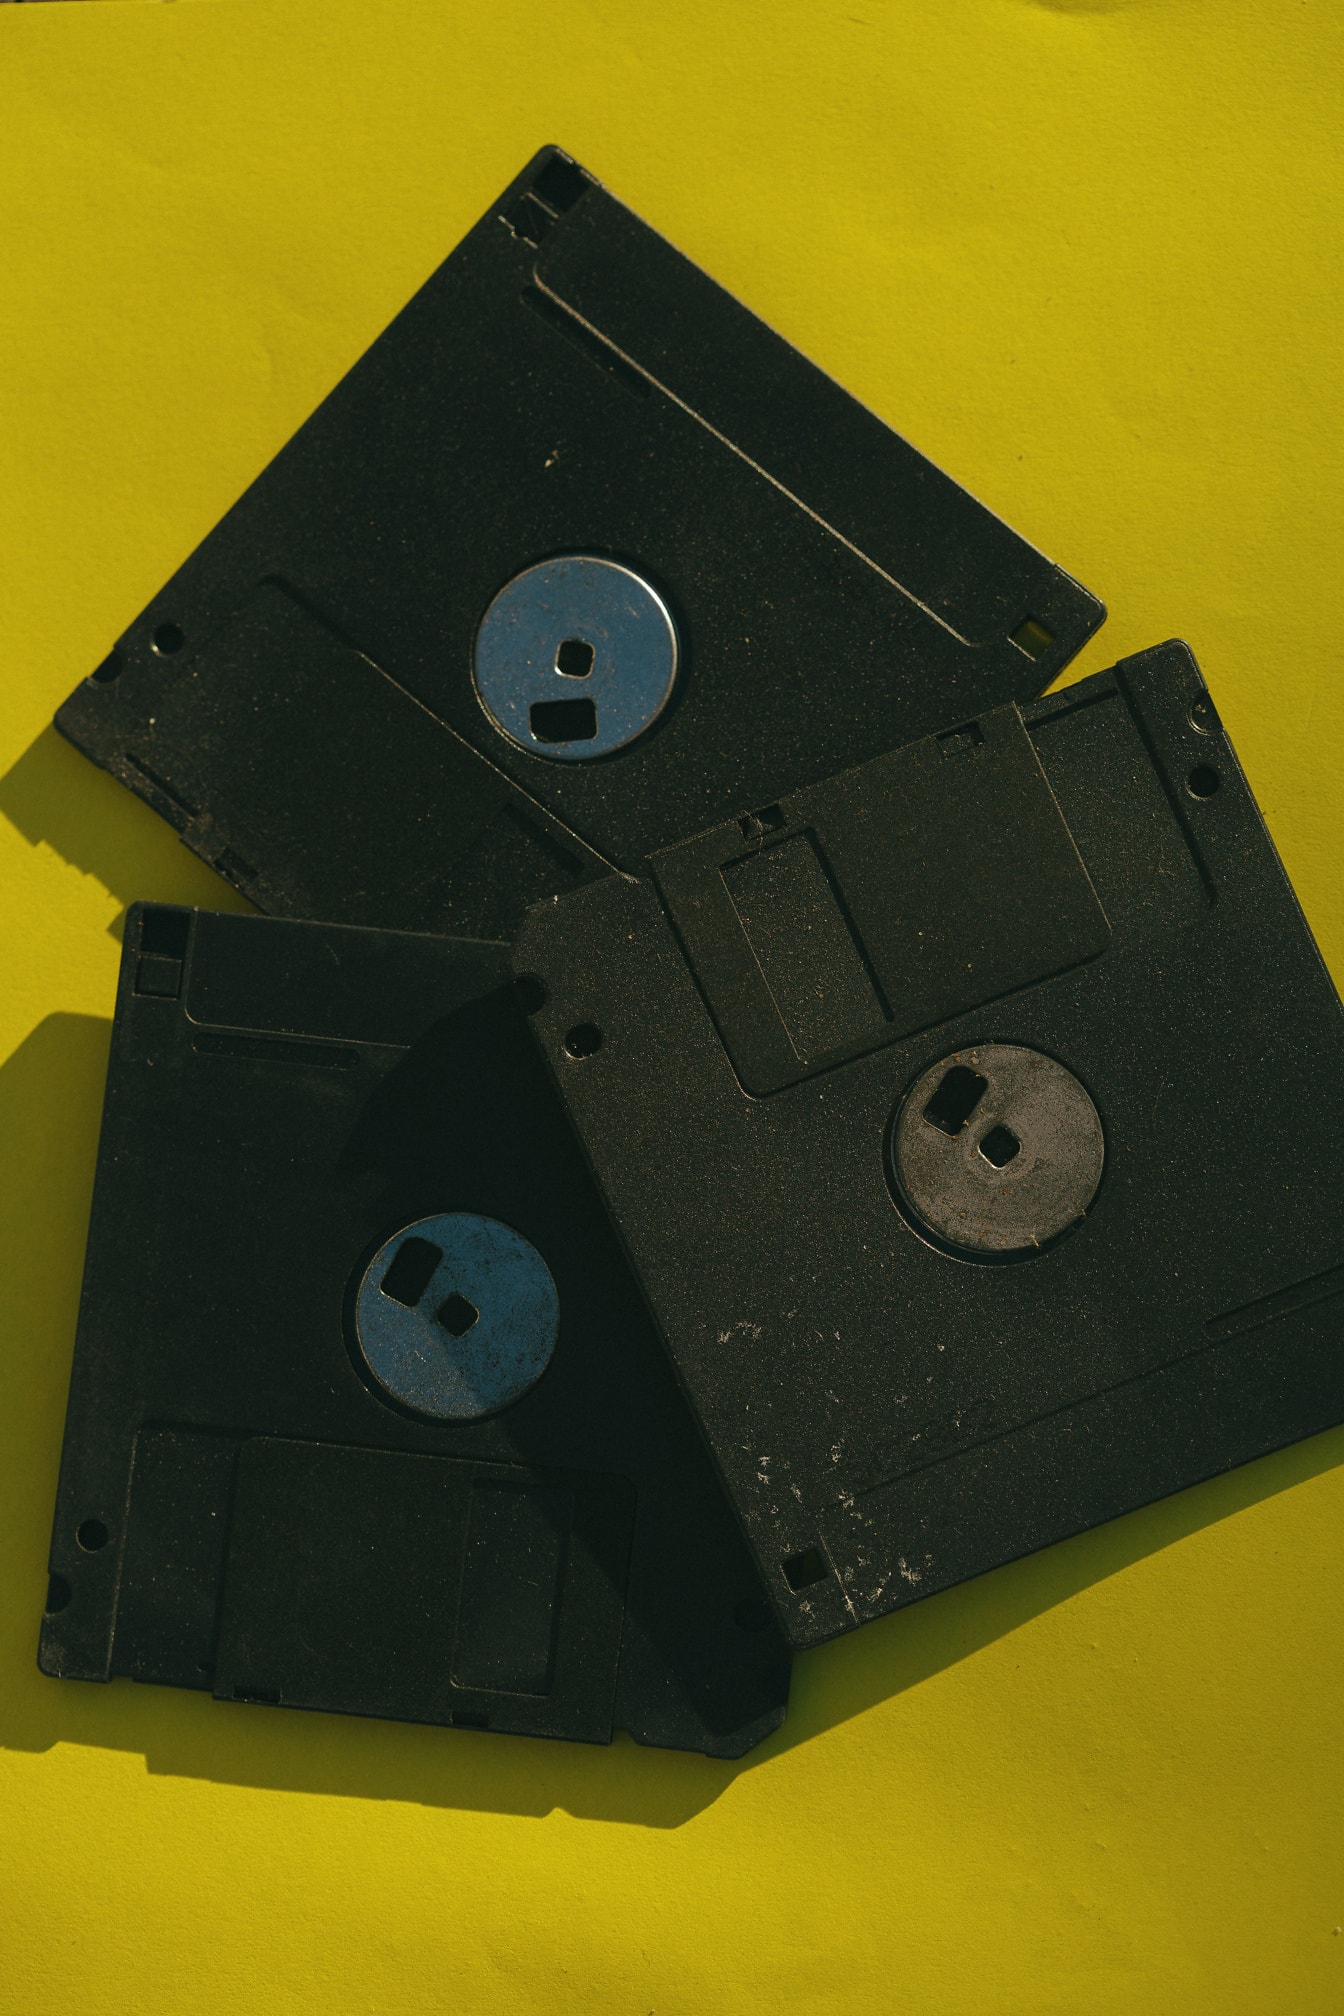 Gamle svarte disketter på gul overflate